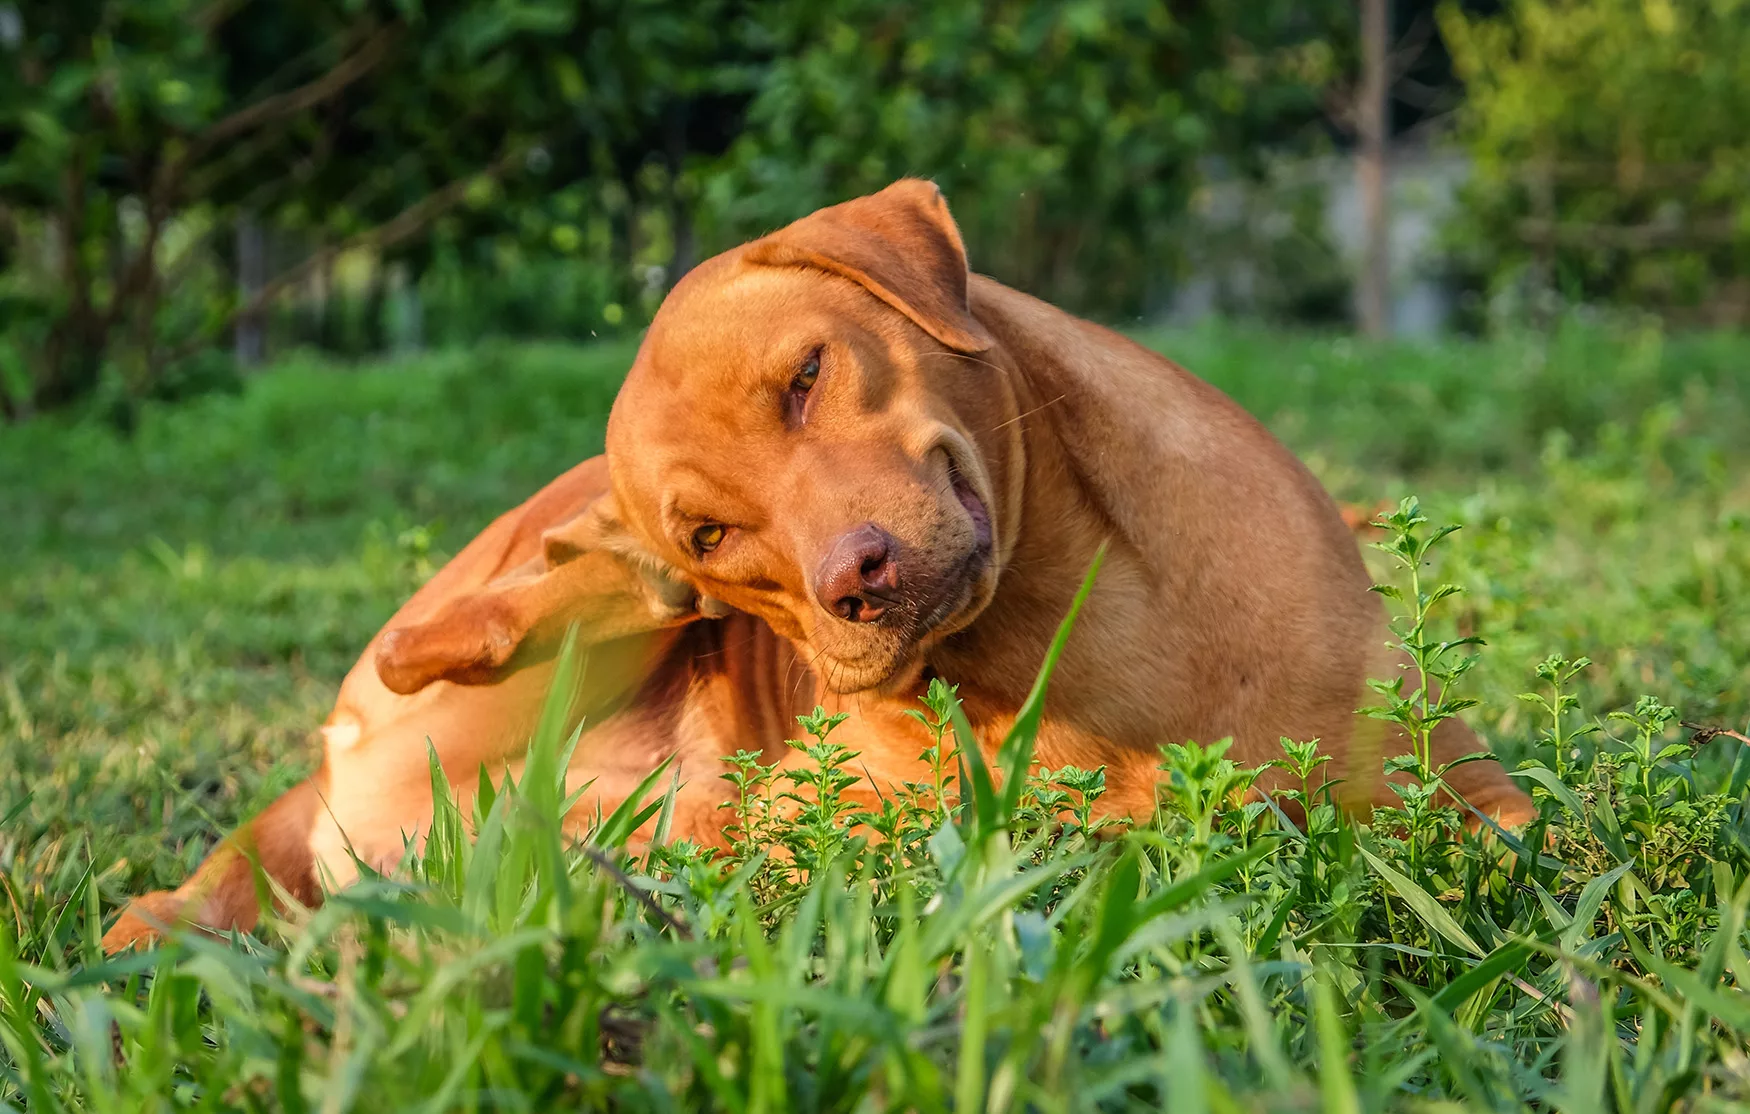 Joseph Banks heerlijkheid Kikker Voorkom vlooien bij honden op een natuurlijke manier | Finecto+